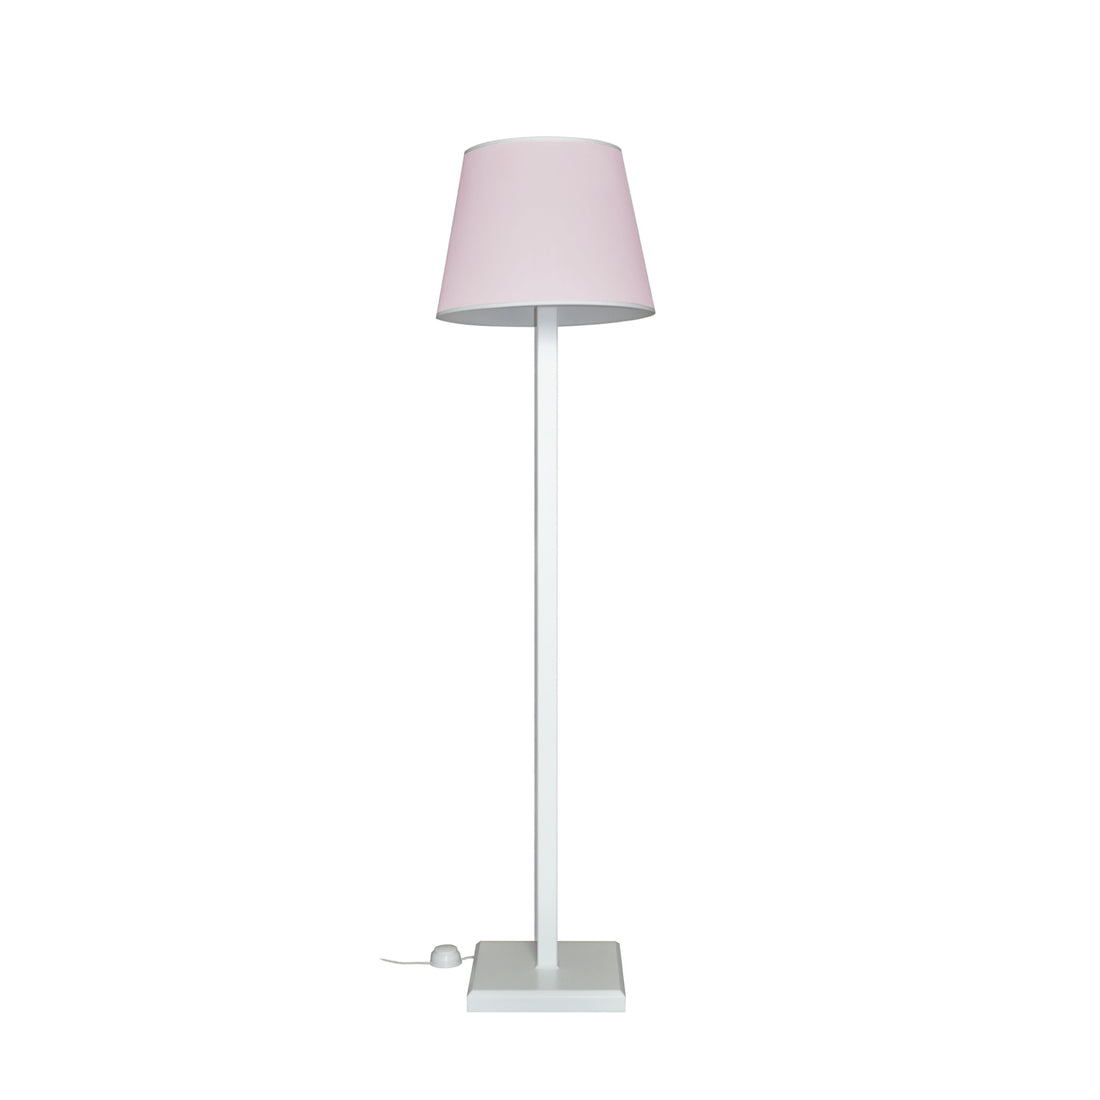 Floor lamp light pink for children rooms | Floor lamp PRESTIGE with light pink lampshade | Floor lamp 165cm 